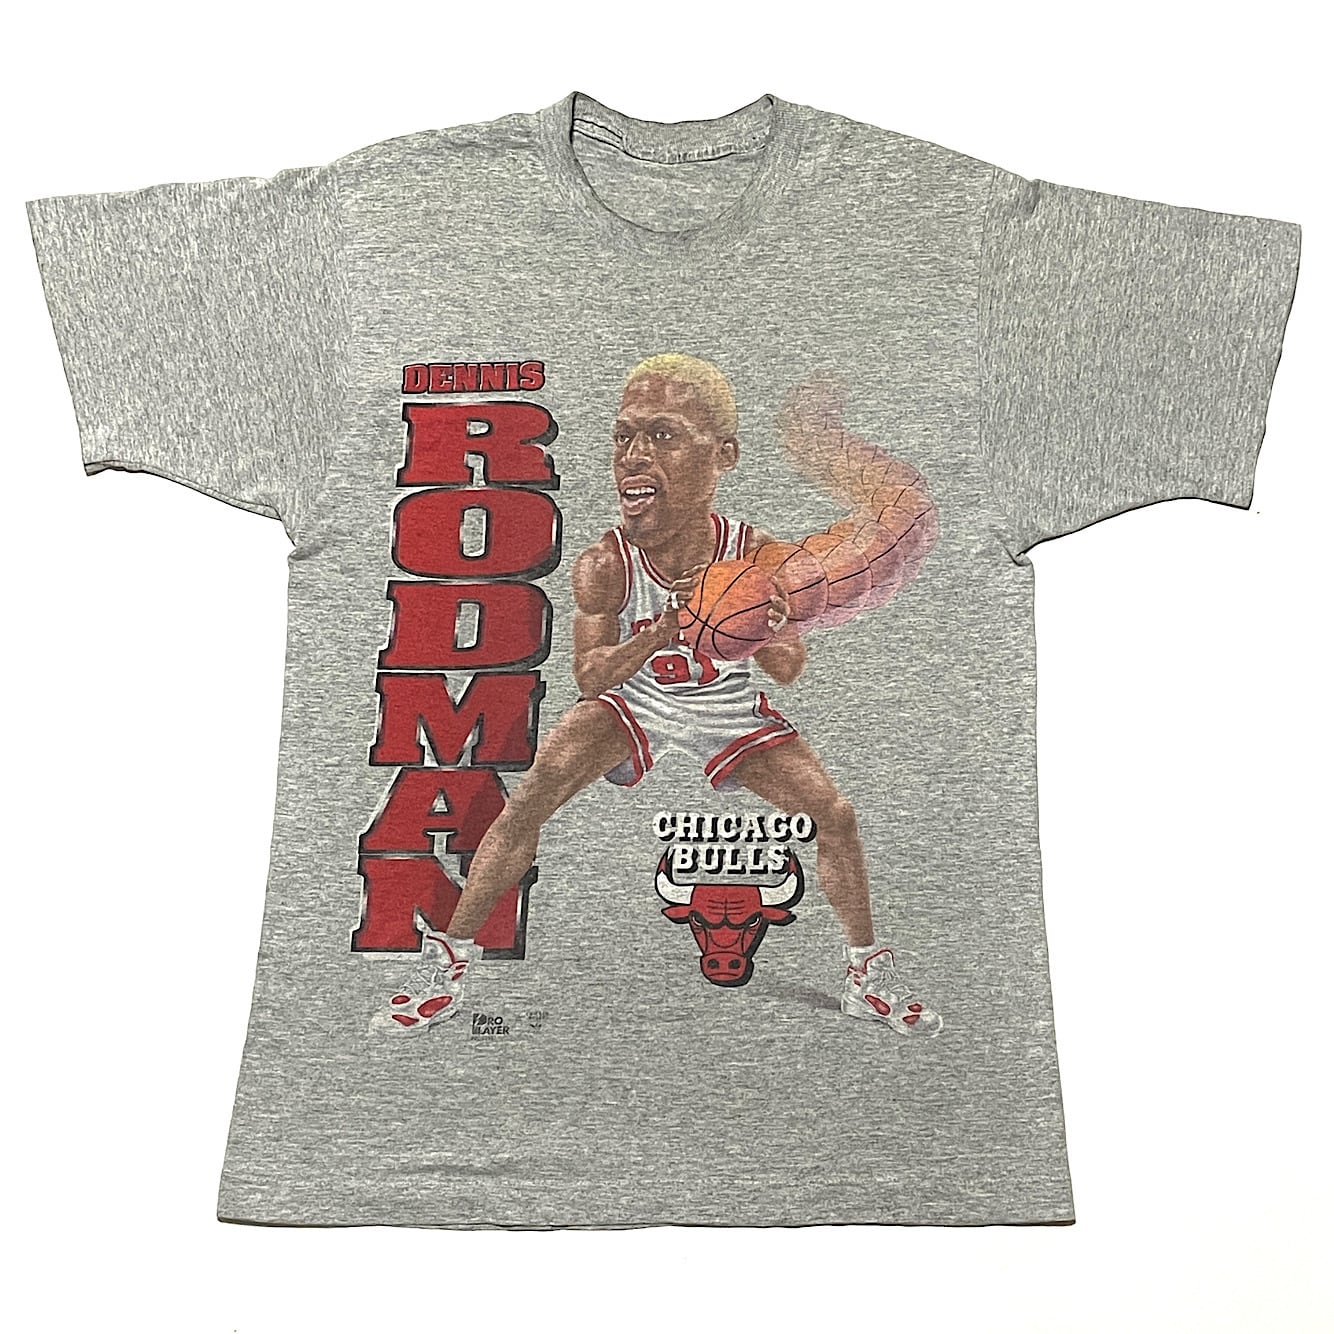 90s デニスロッドマン×シカゴブルズ ヴィンテージ Tシャツ DENNIS RODMAN NBA CHICAGO BULLS PRO  PLAYER(グレー,Mサイズ程度)袖裾シングルステッチ | ヴィンテージ古着&アンティーク商品取扱い Black Smith 